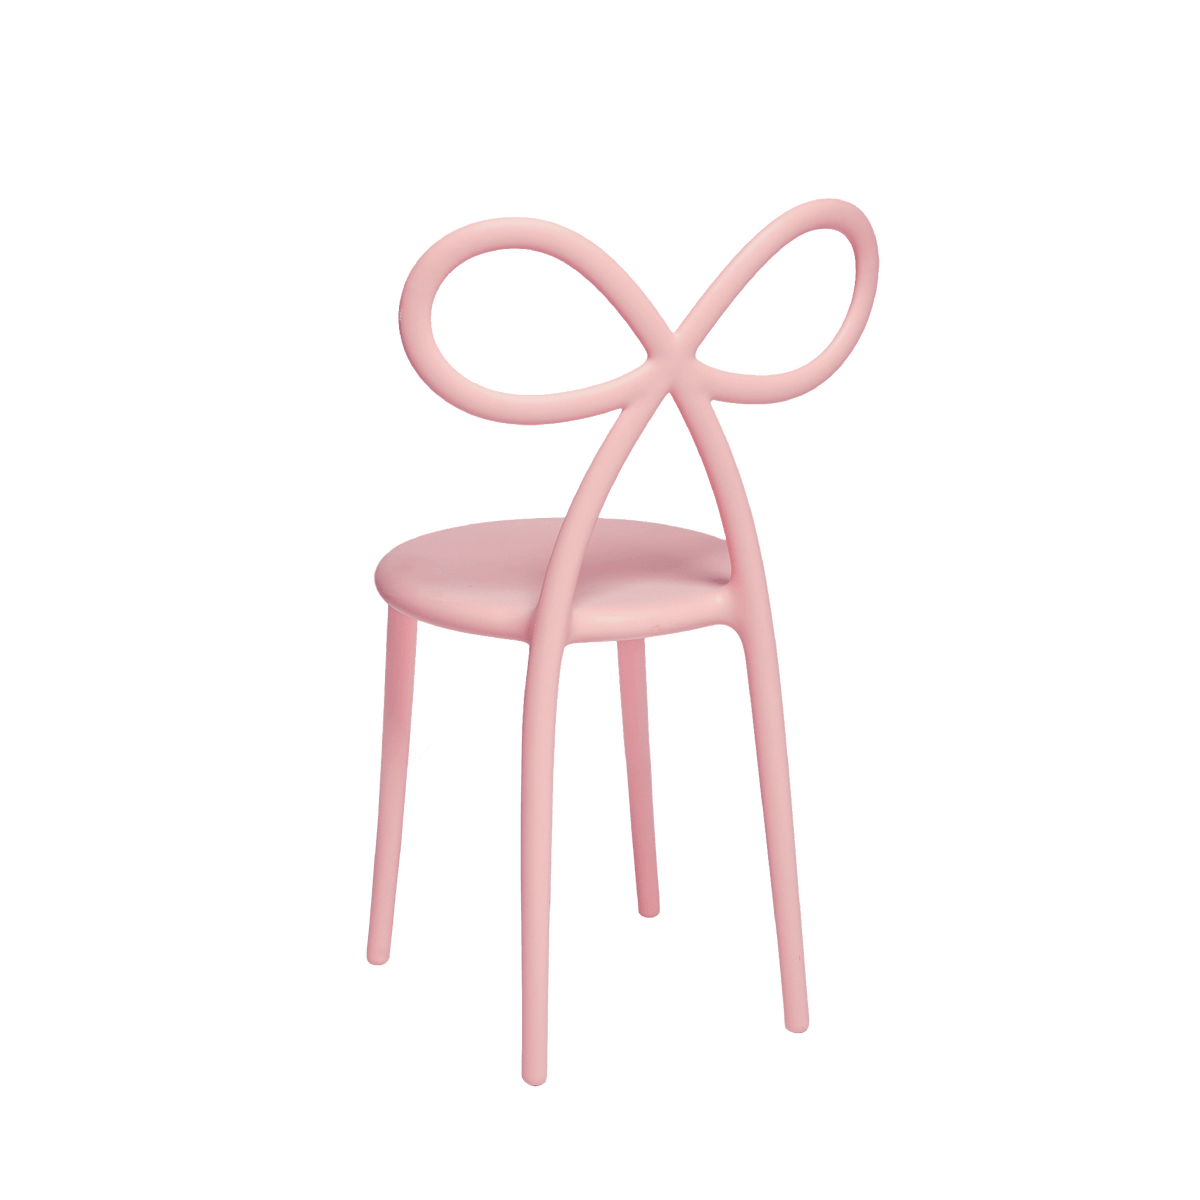 Krzesło Ribbon stało się symbolem mocnej żeńskiej energii, które nabiera tożsamości wyrażając wszelkiego rodzaju emocje. Wdzięczne i zdumiewające w swojej formie staje się symbolem podarunku.